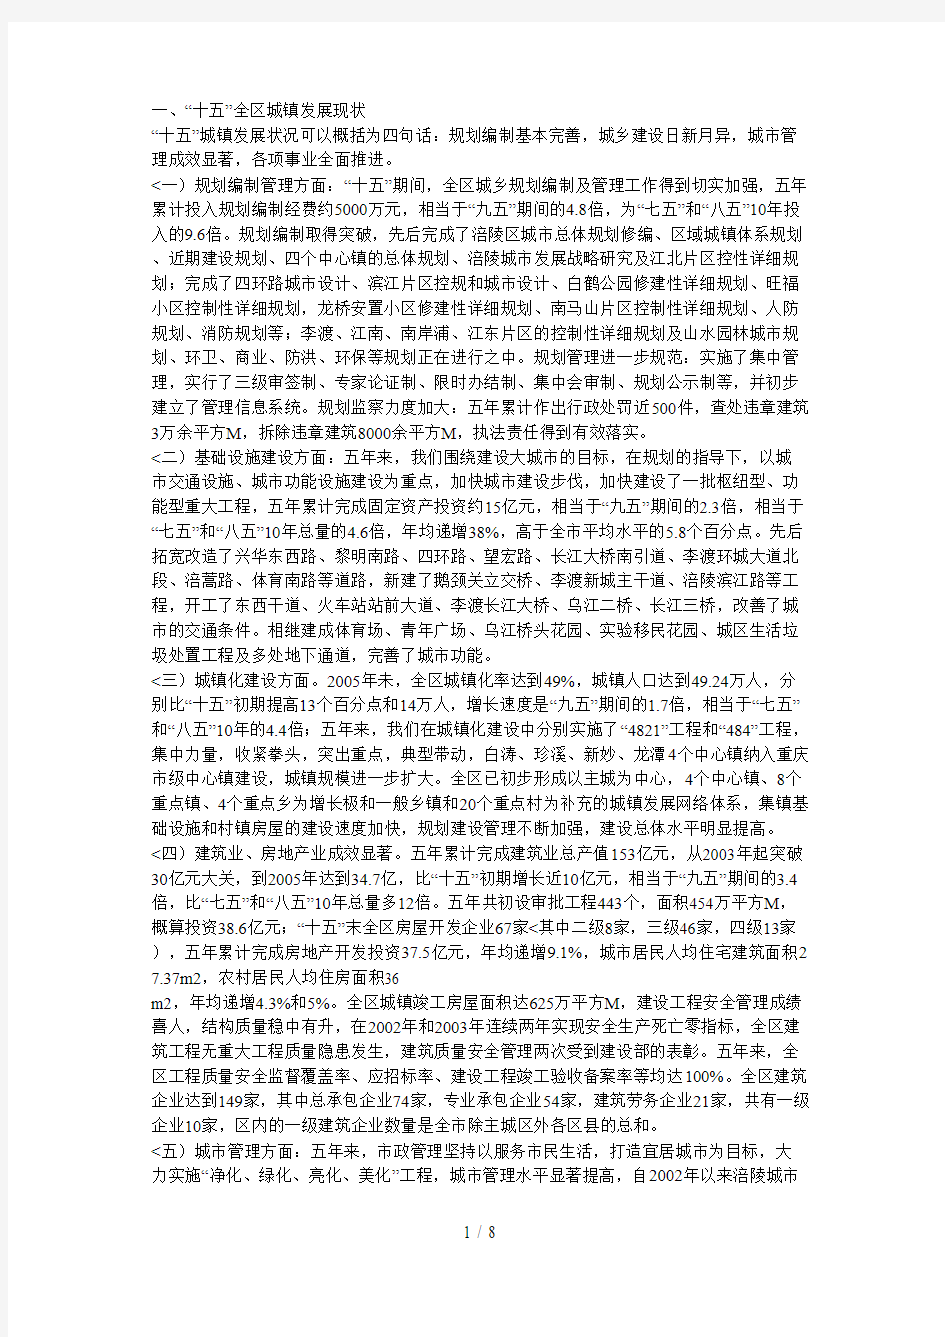 重庆市涪陵区城市发展战略分析研究